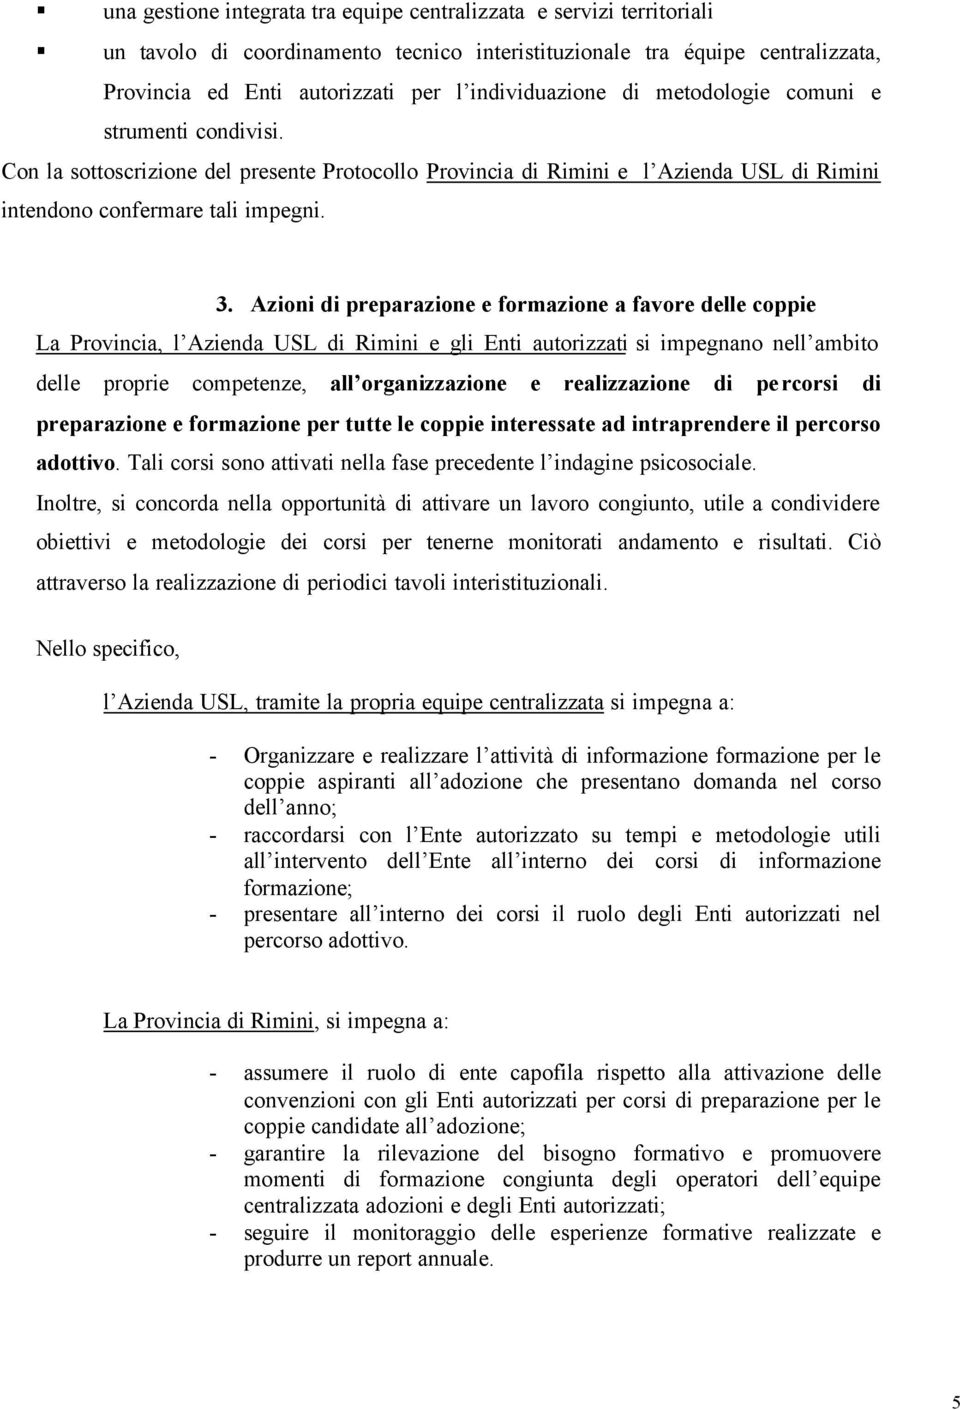 Azioni di preparazione e formazione a favore delle coppie La Provincia, l Azienda USL di Rimini e gli Enti autorizzati si impegnano nell ambito delle proprie competenze, all organizzazione e